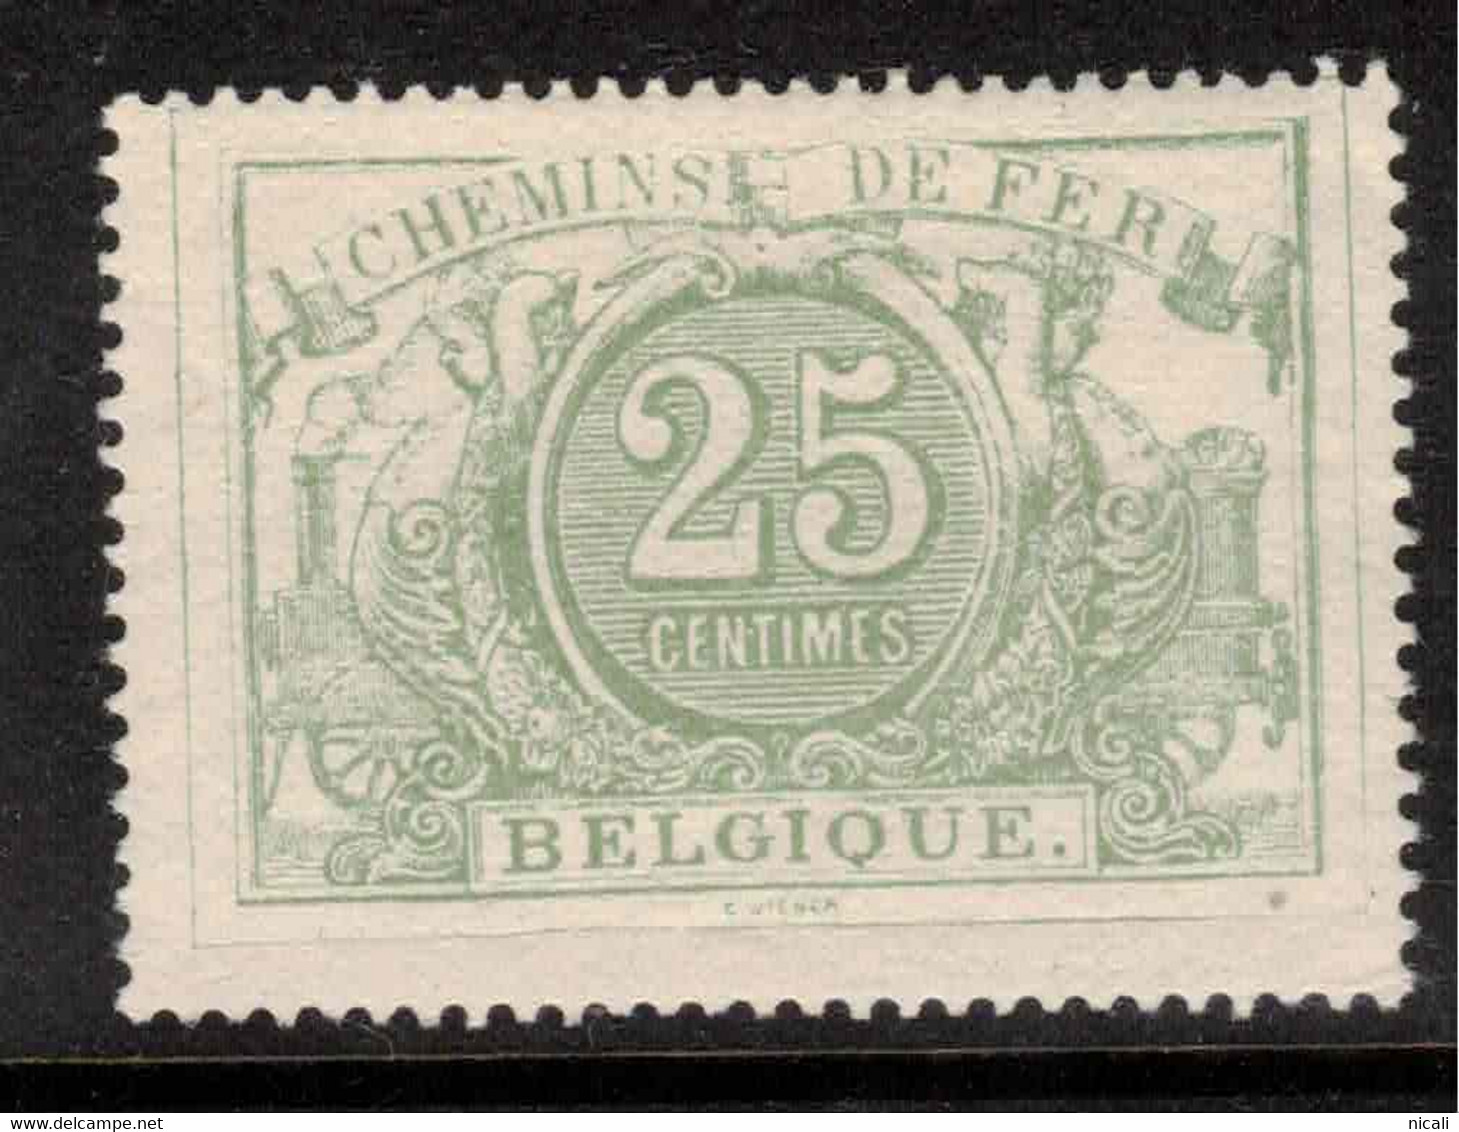 BELGIUM 1882 25c Railway Parcel Stamp SG P77 HM #ZZB9 - Mint